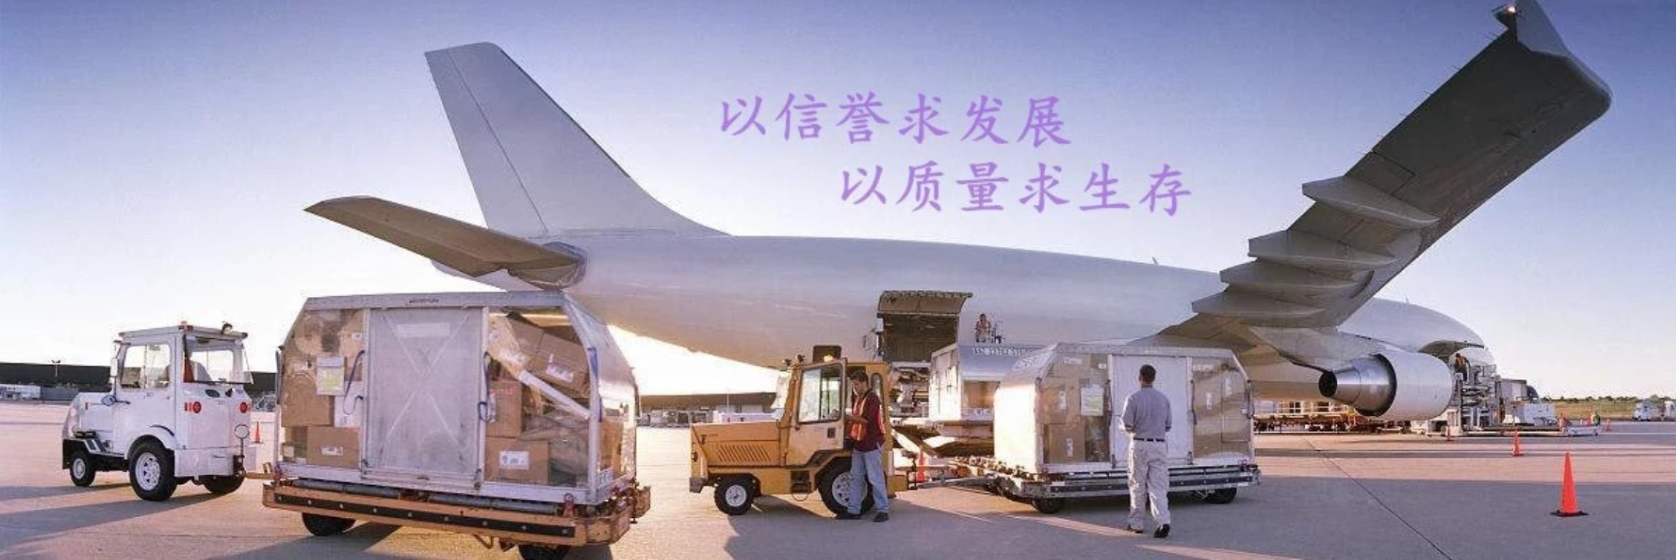 上海到克努托内空运订舱货代专线口罩洗手液浦东机场物流